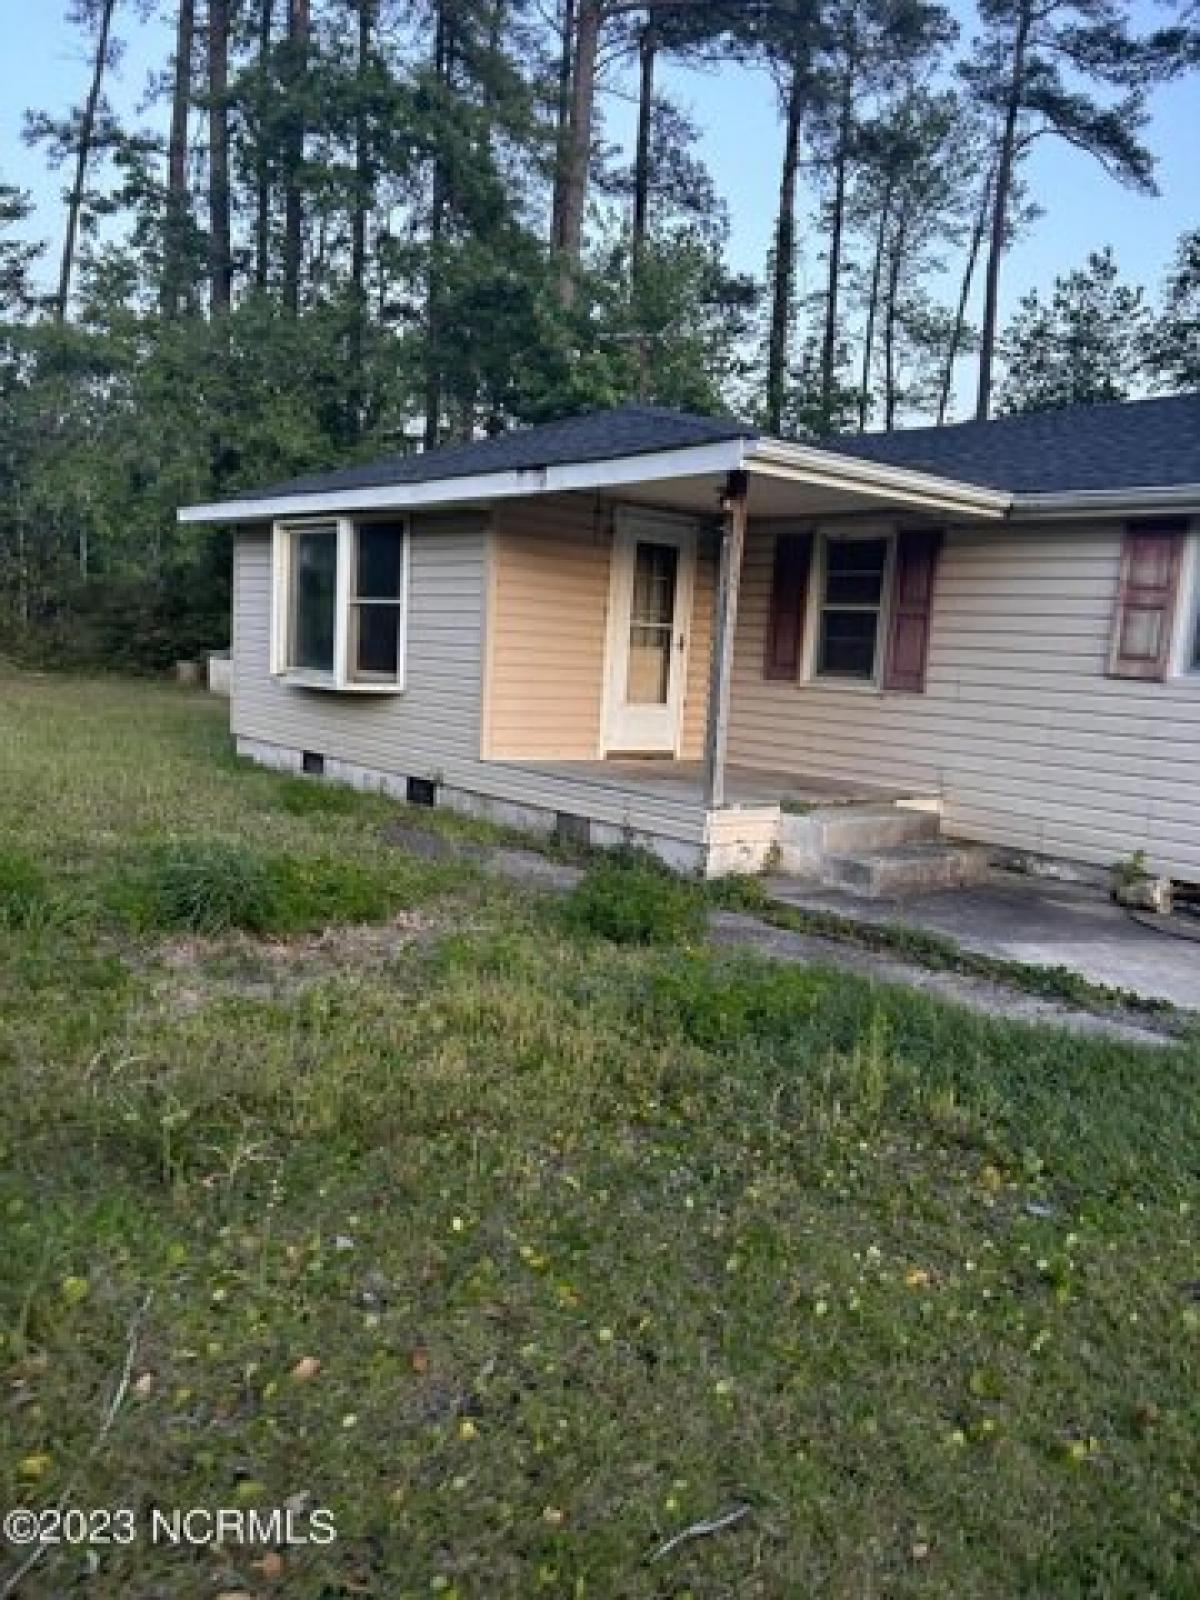 Picture of Home For Sale in Hallsboro, North Carolina, United States